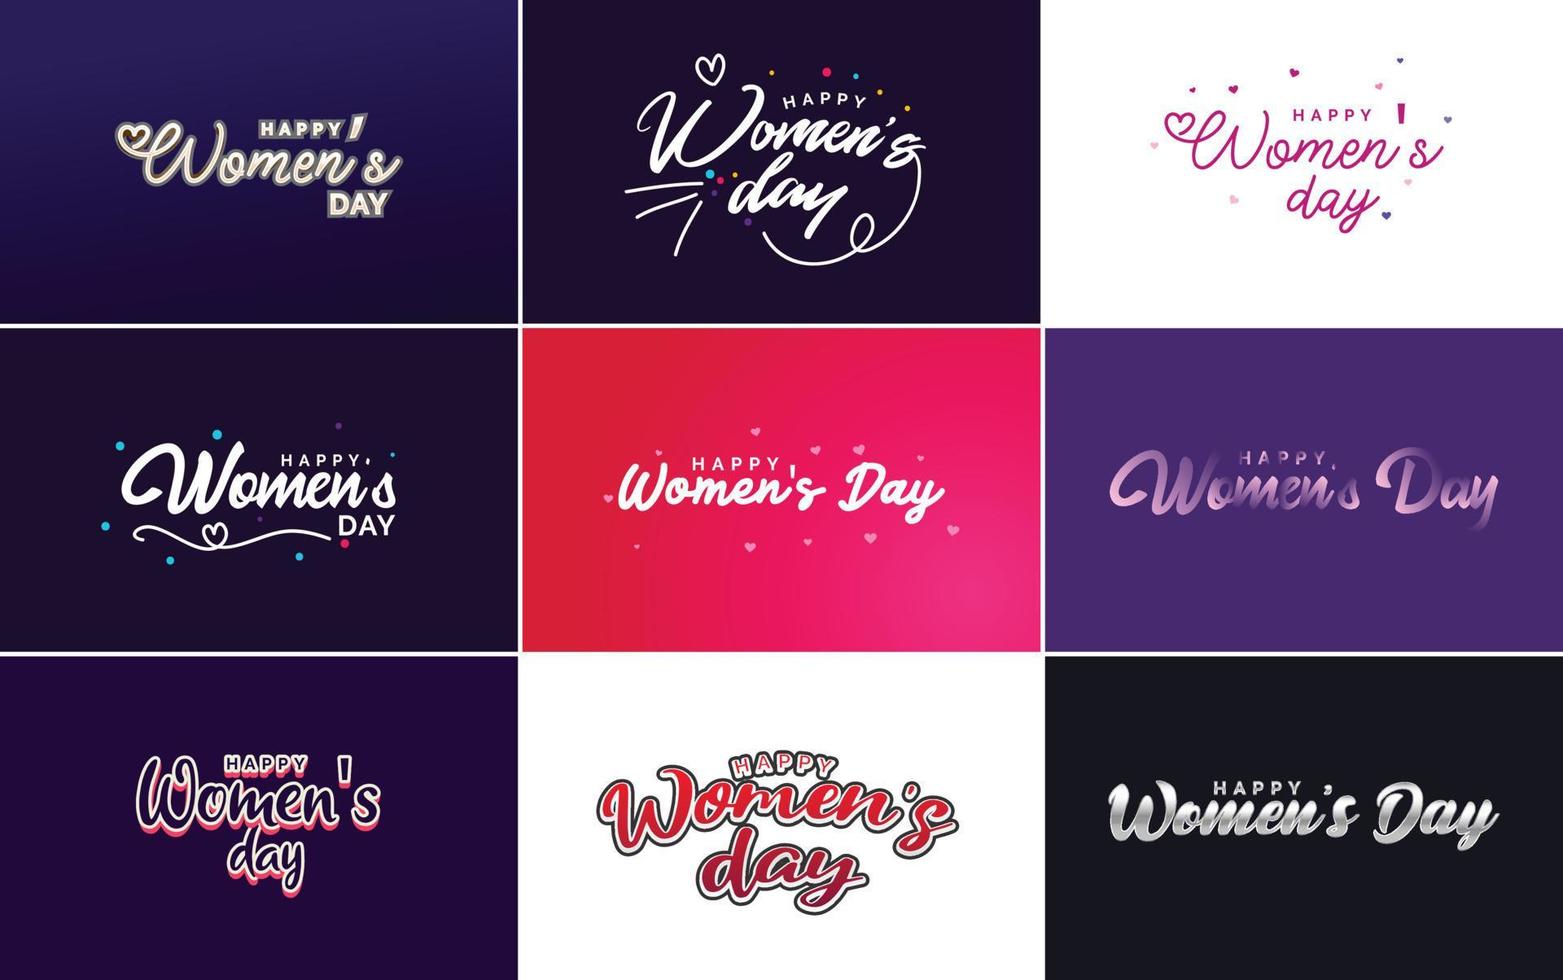 conjunto de tarjetas del día internacional de la mujer con un logotipo vector